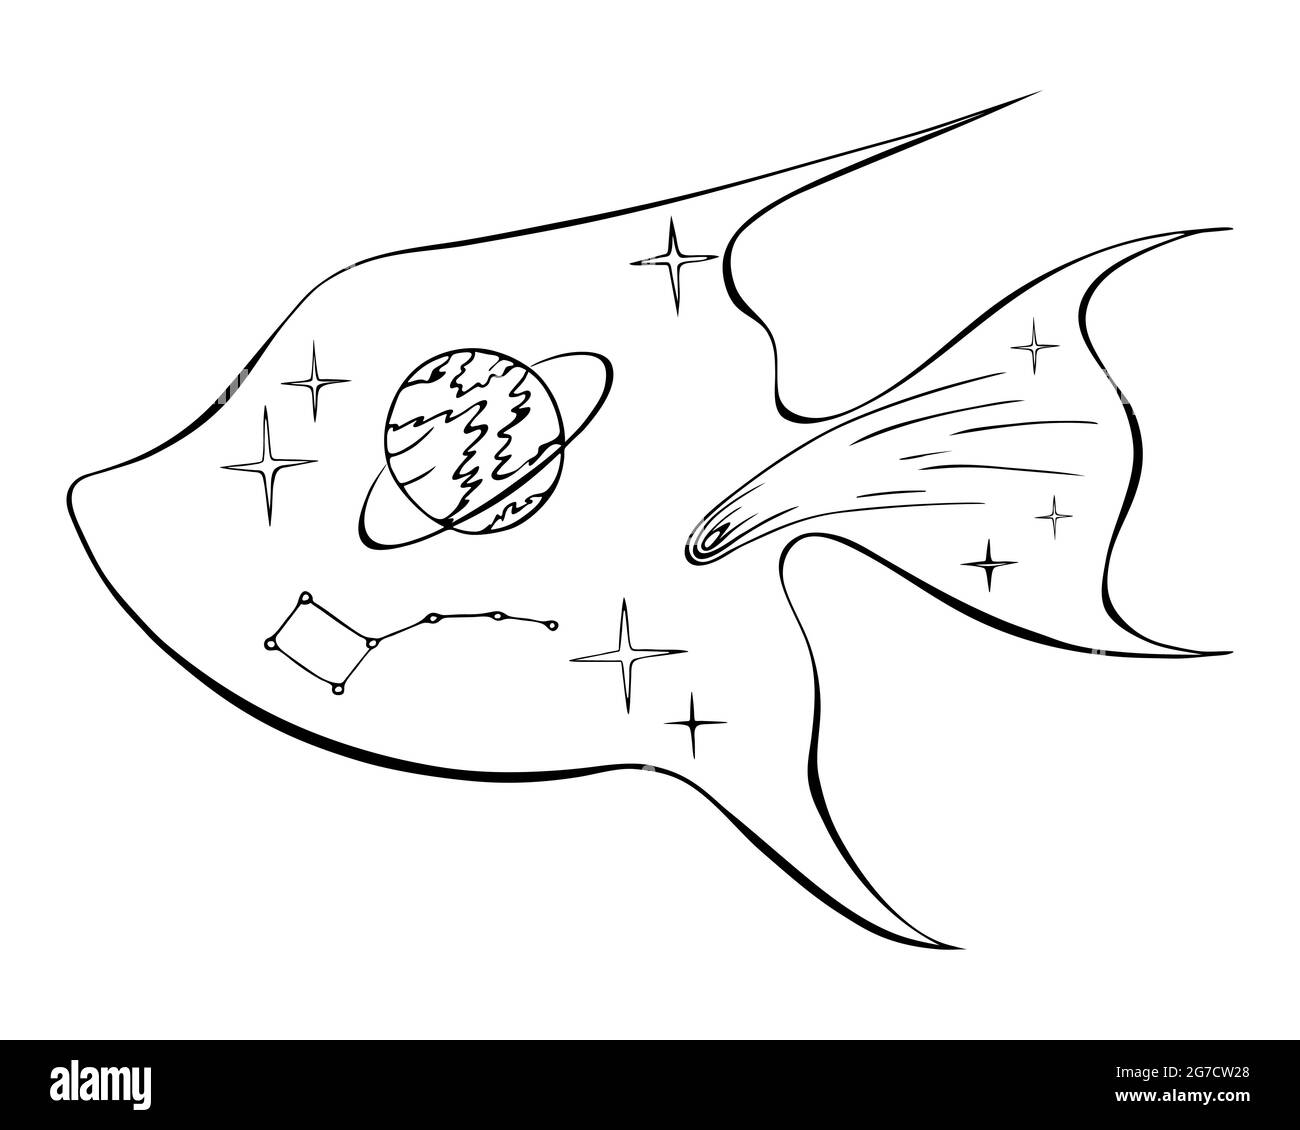 Silhouette di pesce con oggetti spazio comet, pianeta, stella, costellazione, stile doodling, disegno a mano libera nero. Su sfondo bianco, libro da colorare. Illustrazione vettoriale Illustrazione Vettoriale